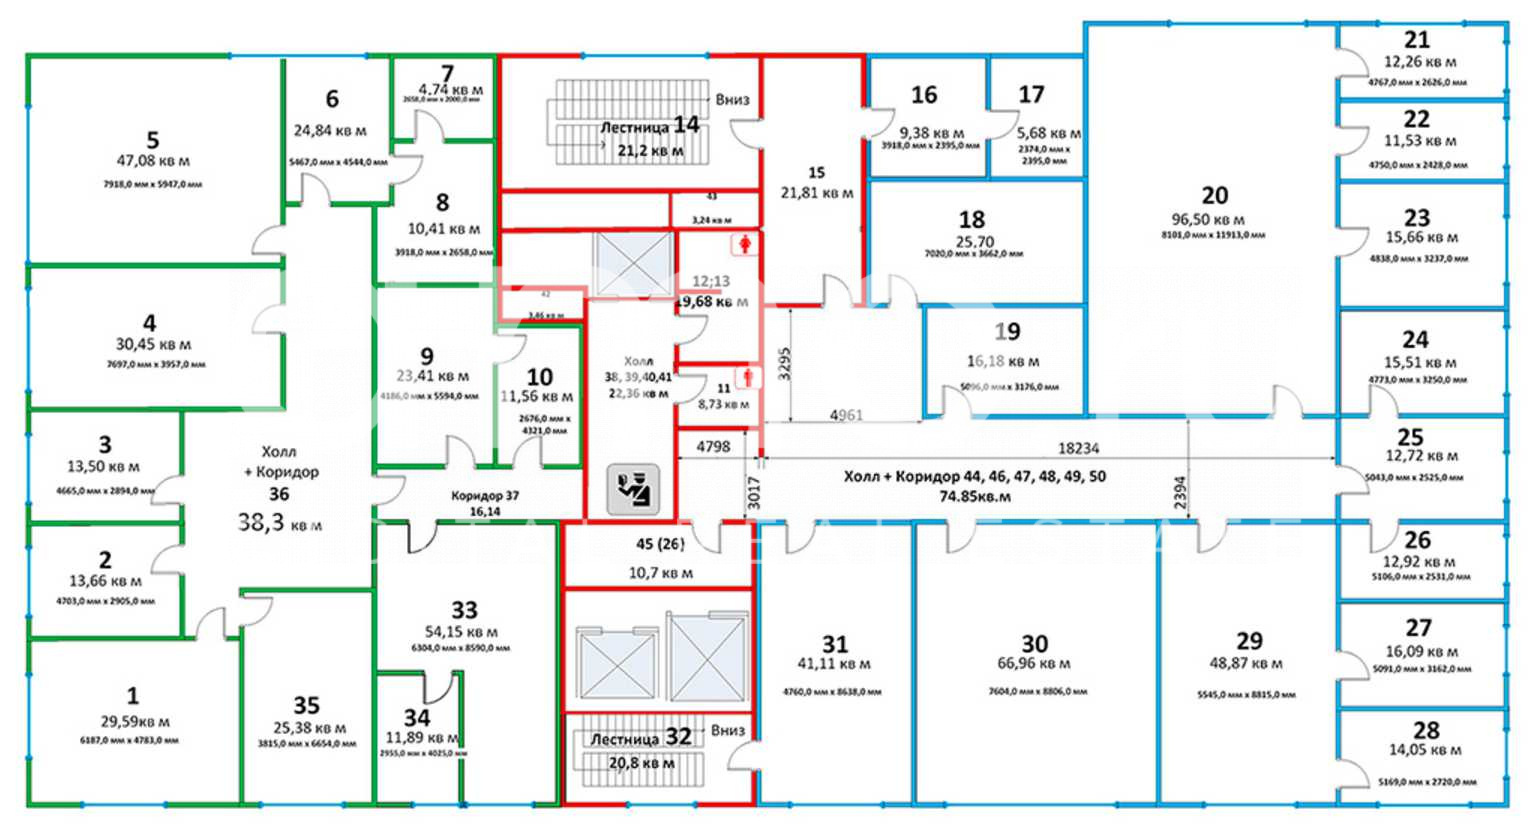 Какой комната какой этаж. План авиапарка 4 этаж. Авиапарк план этажей. Авиапарк план 4 этажа. Карта авиапарка 4 этаж.